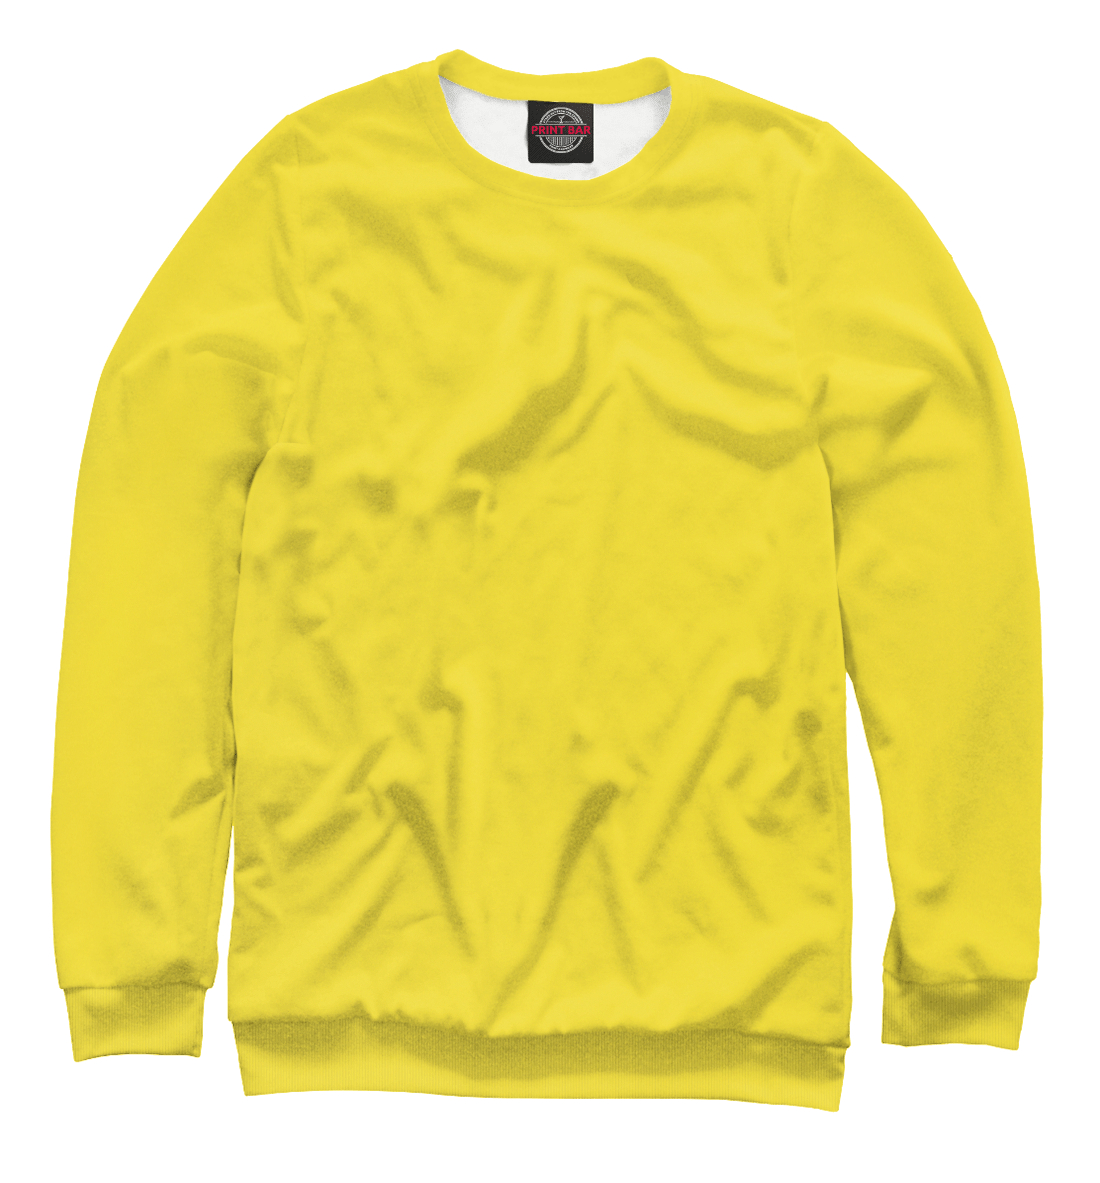 Детский Свитшот Цвет Рапсово-желтый для девочек, артикул CLR-692519-swi-1mp